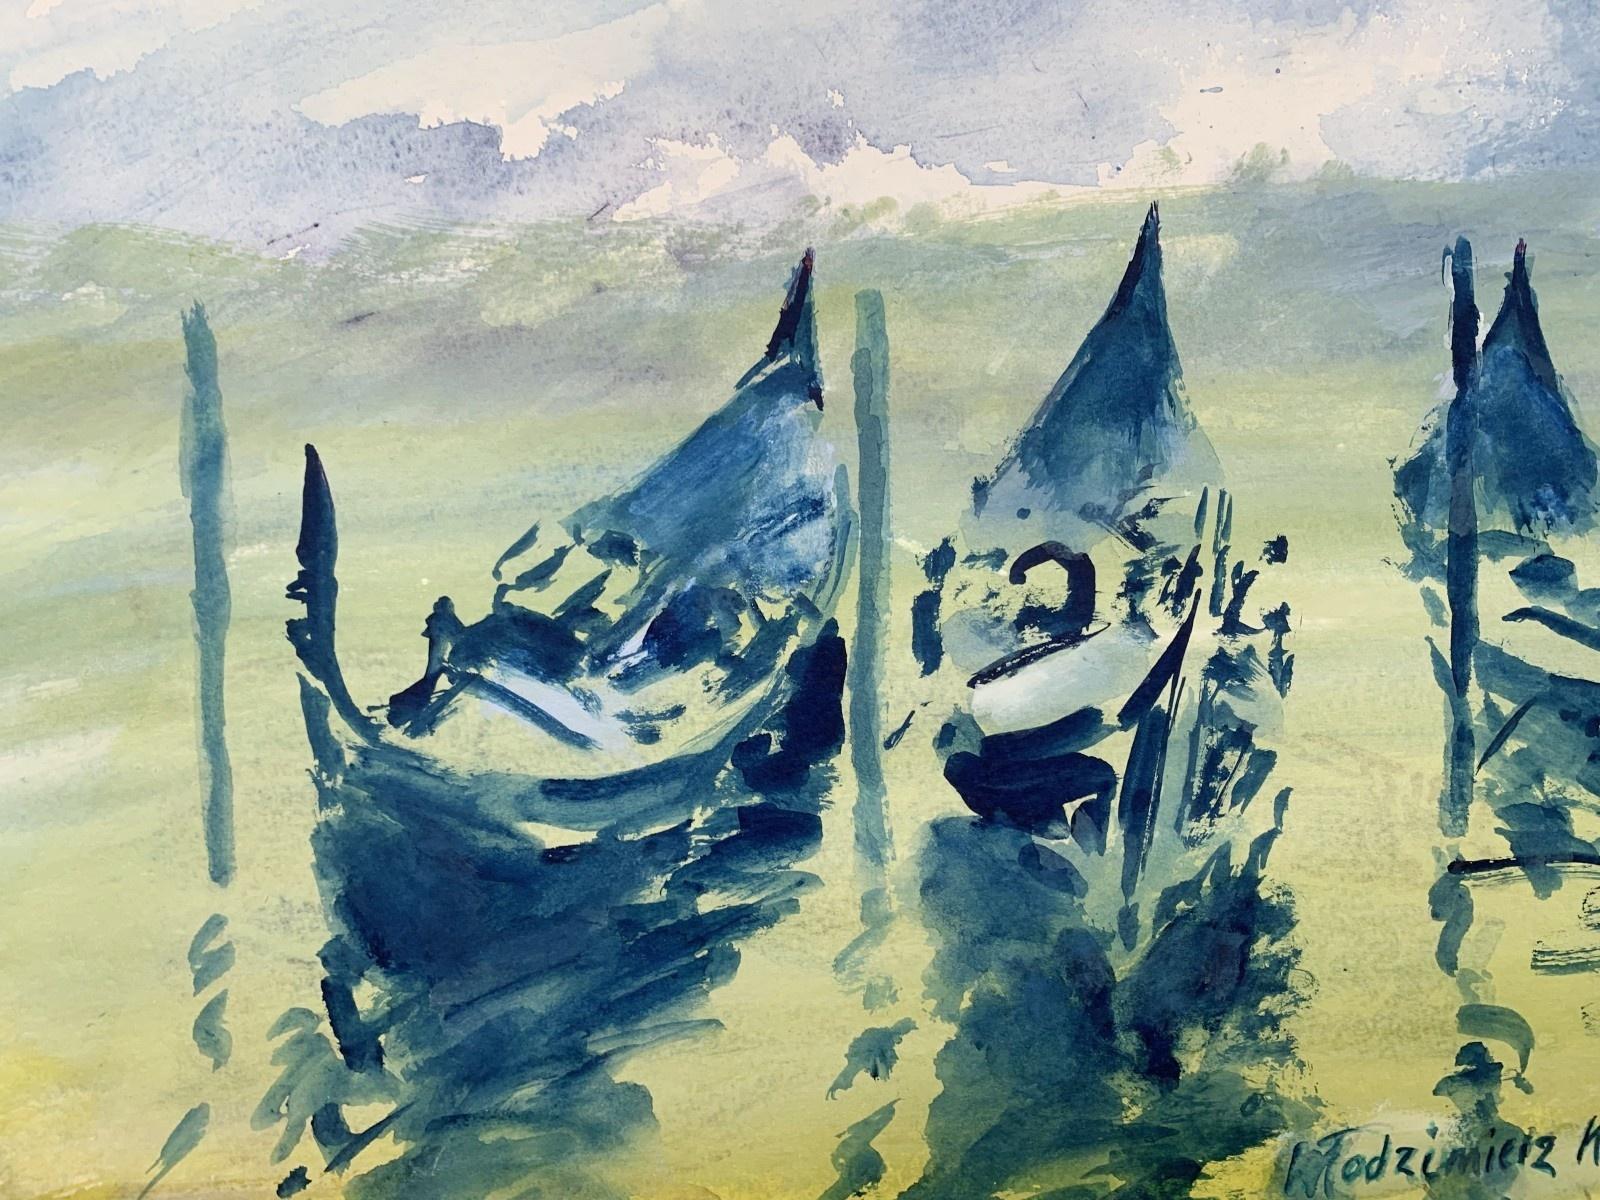 Venezianische Gondeln – Aquarell, Boote, Realistisch, Klassisch, Polnischer Künstler (Grau), Landscape Art, von Włodzimierz Karczmarzyk